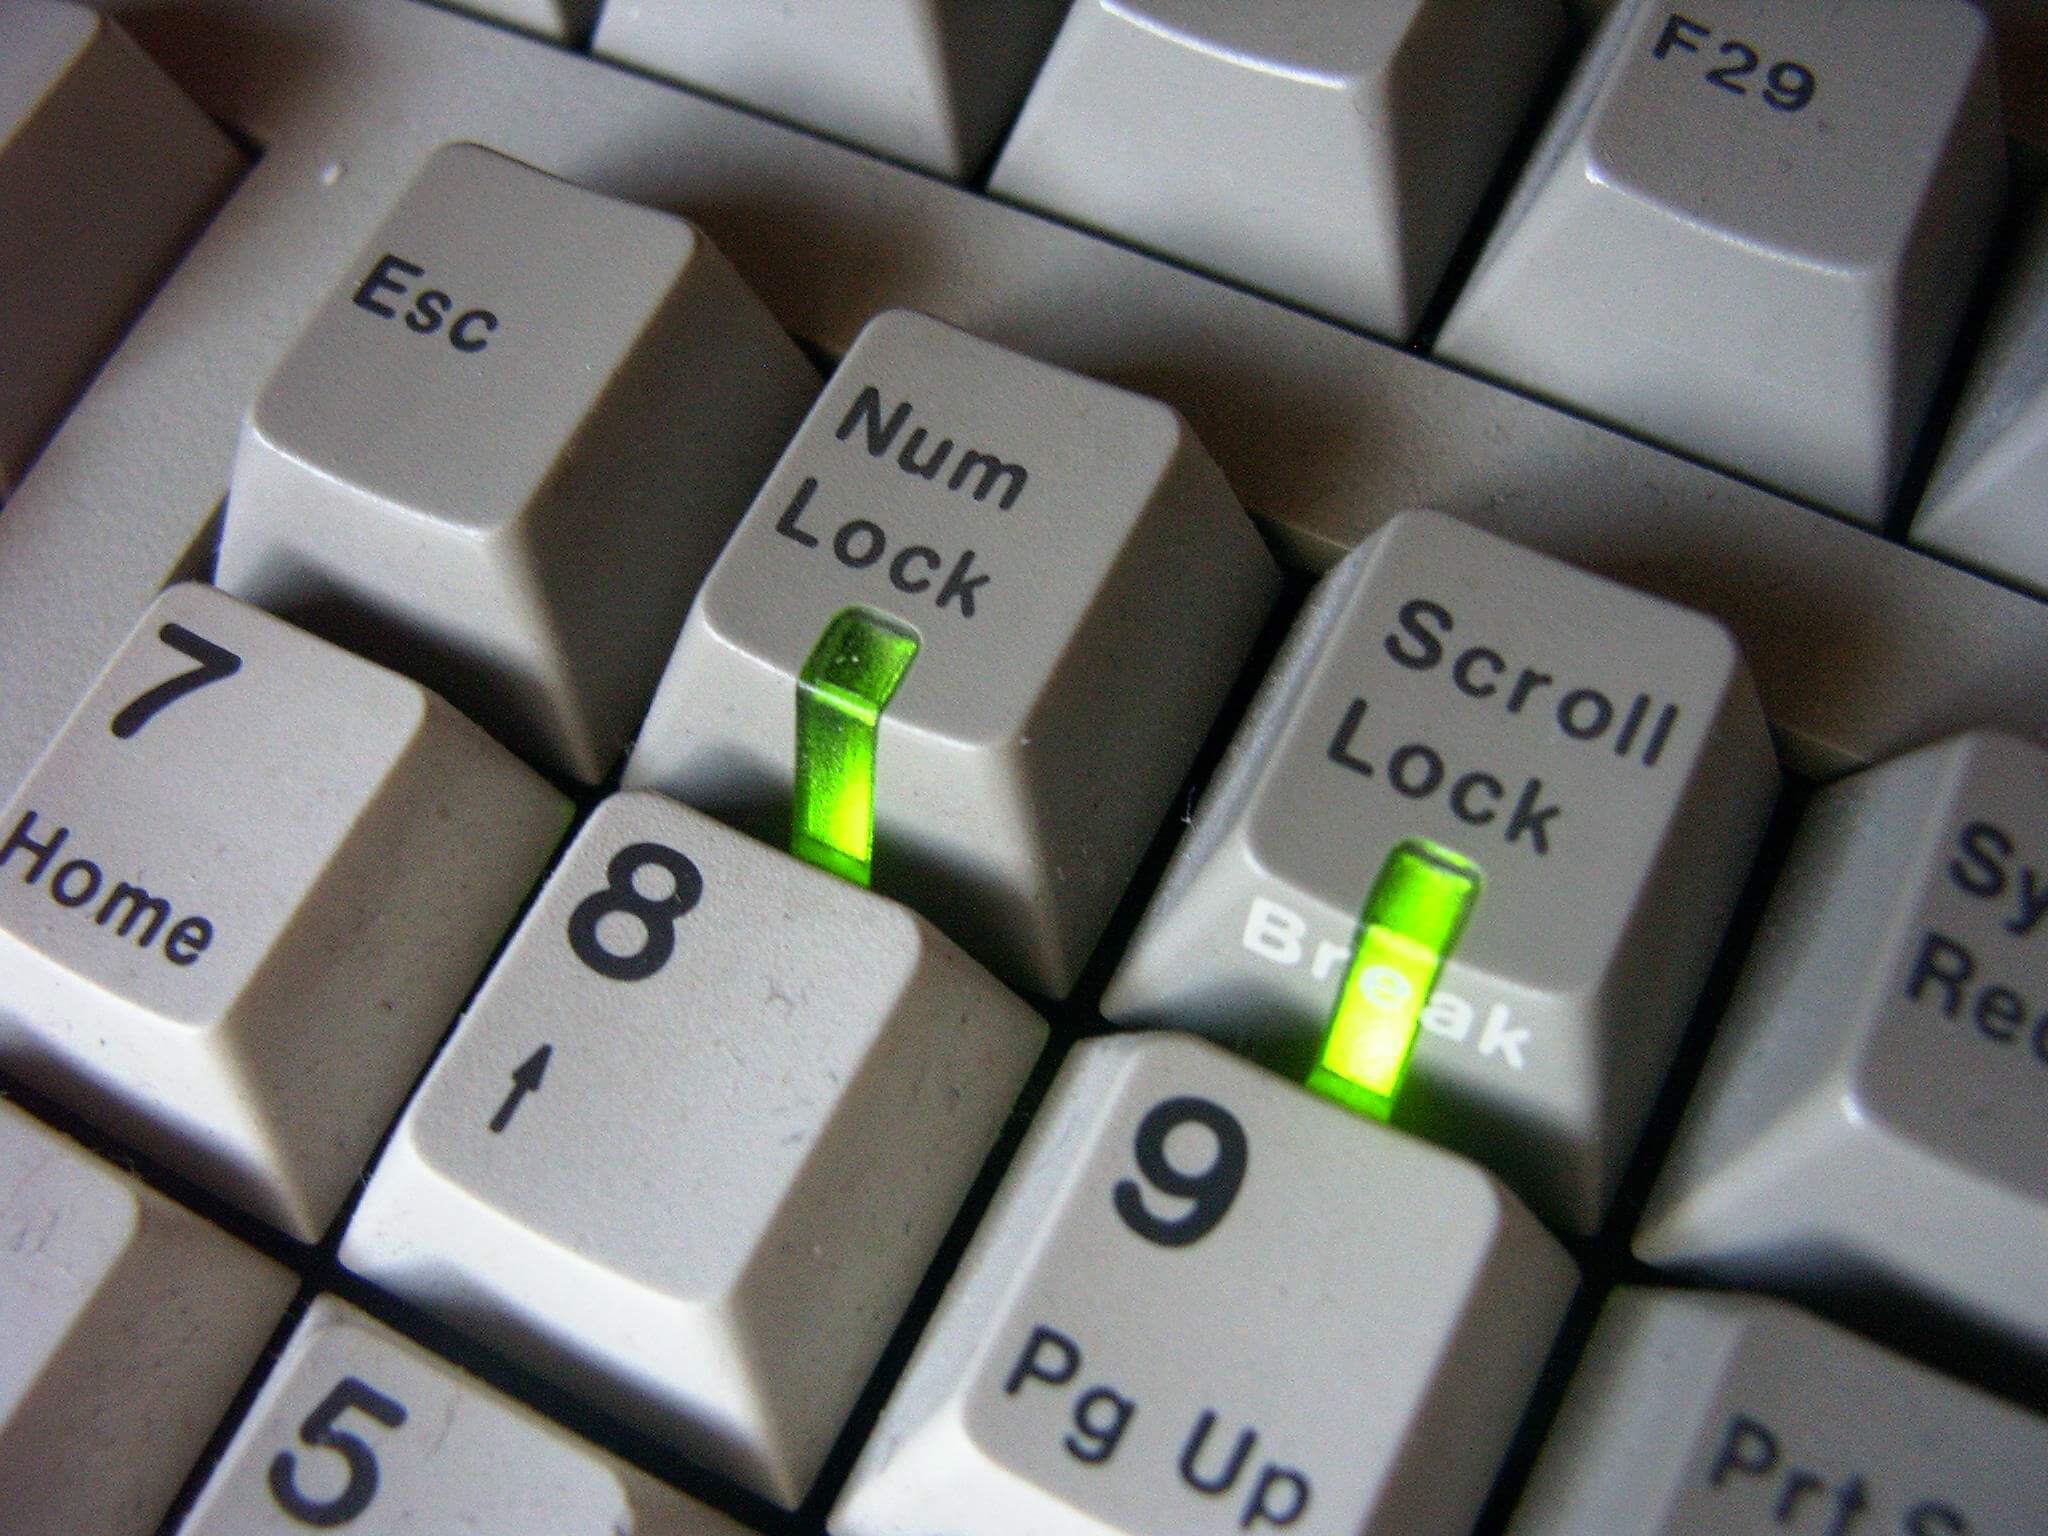 teclas lock del teclado